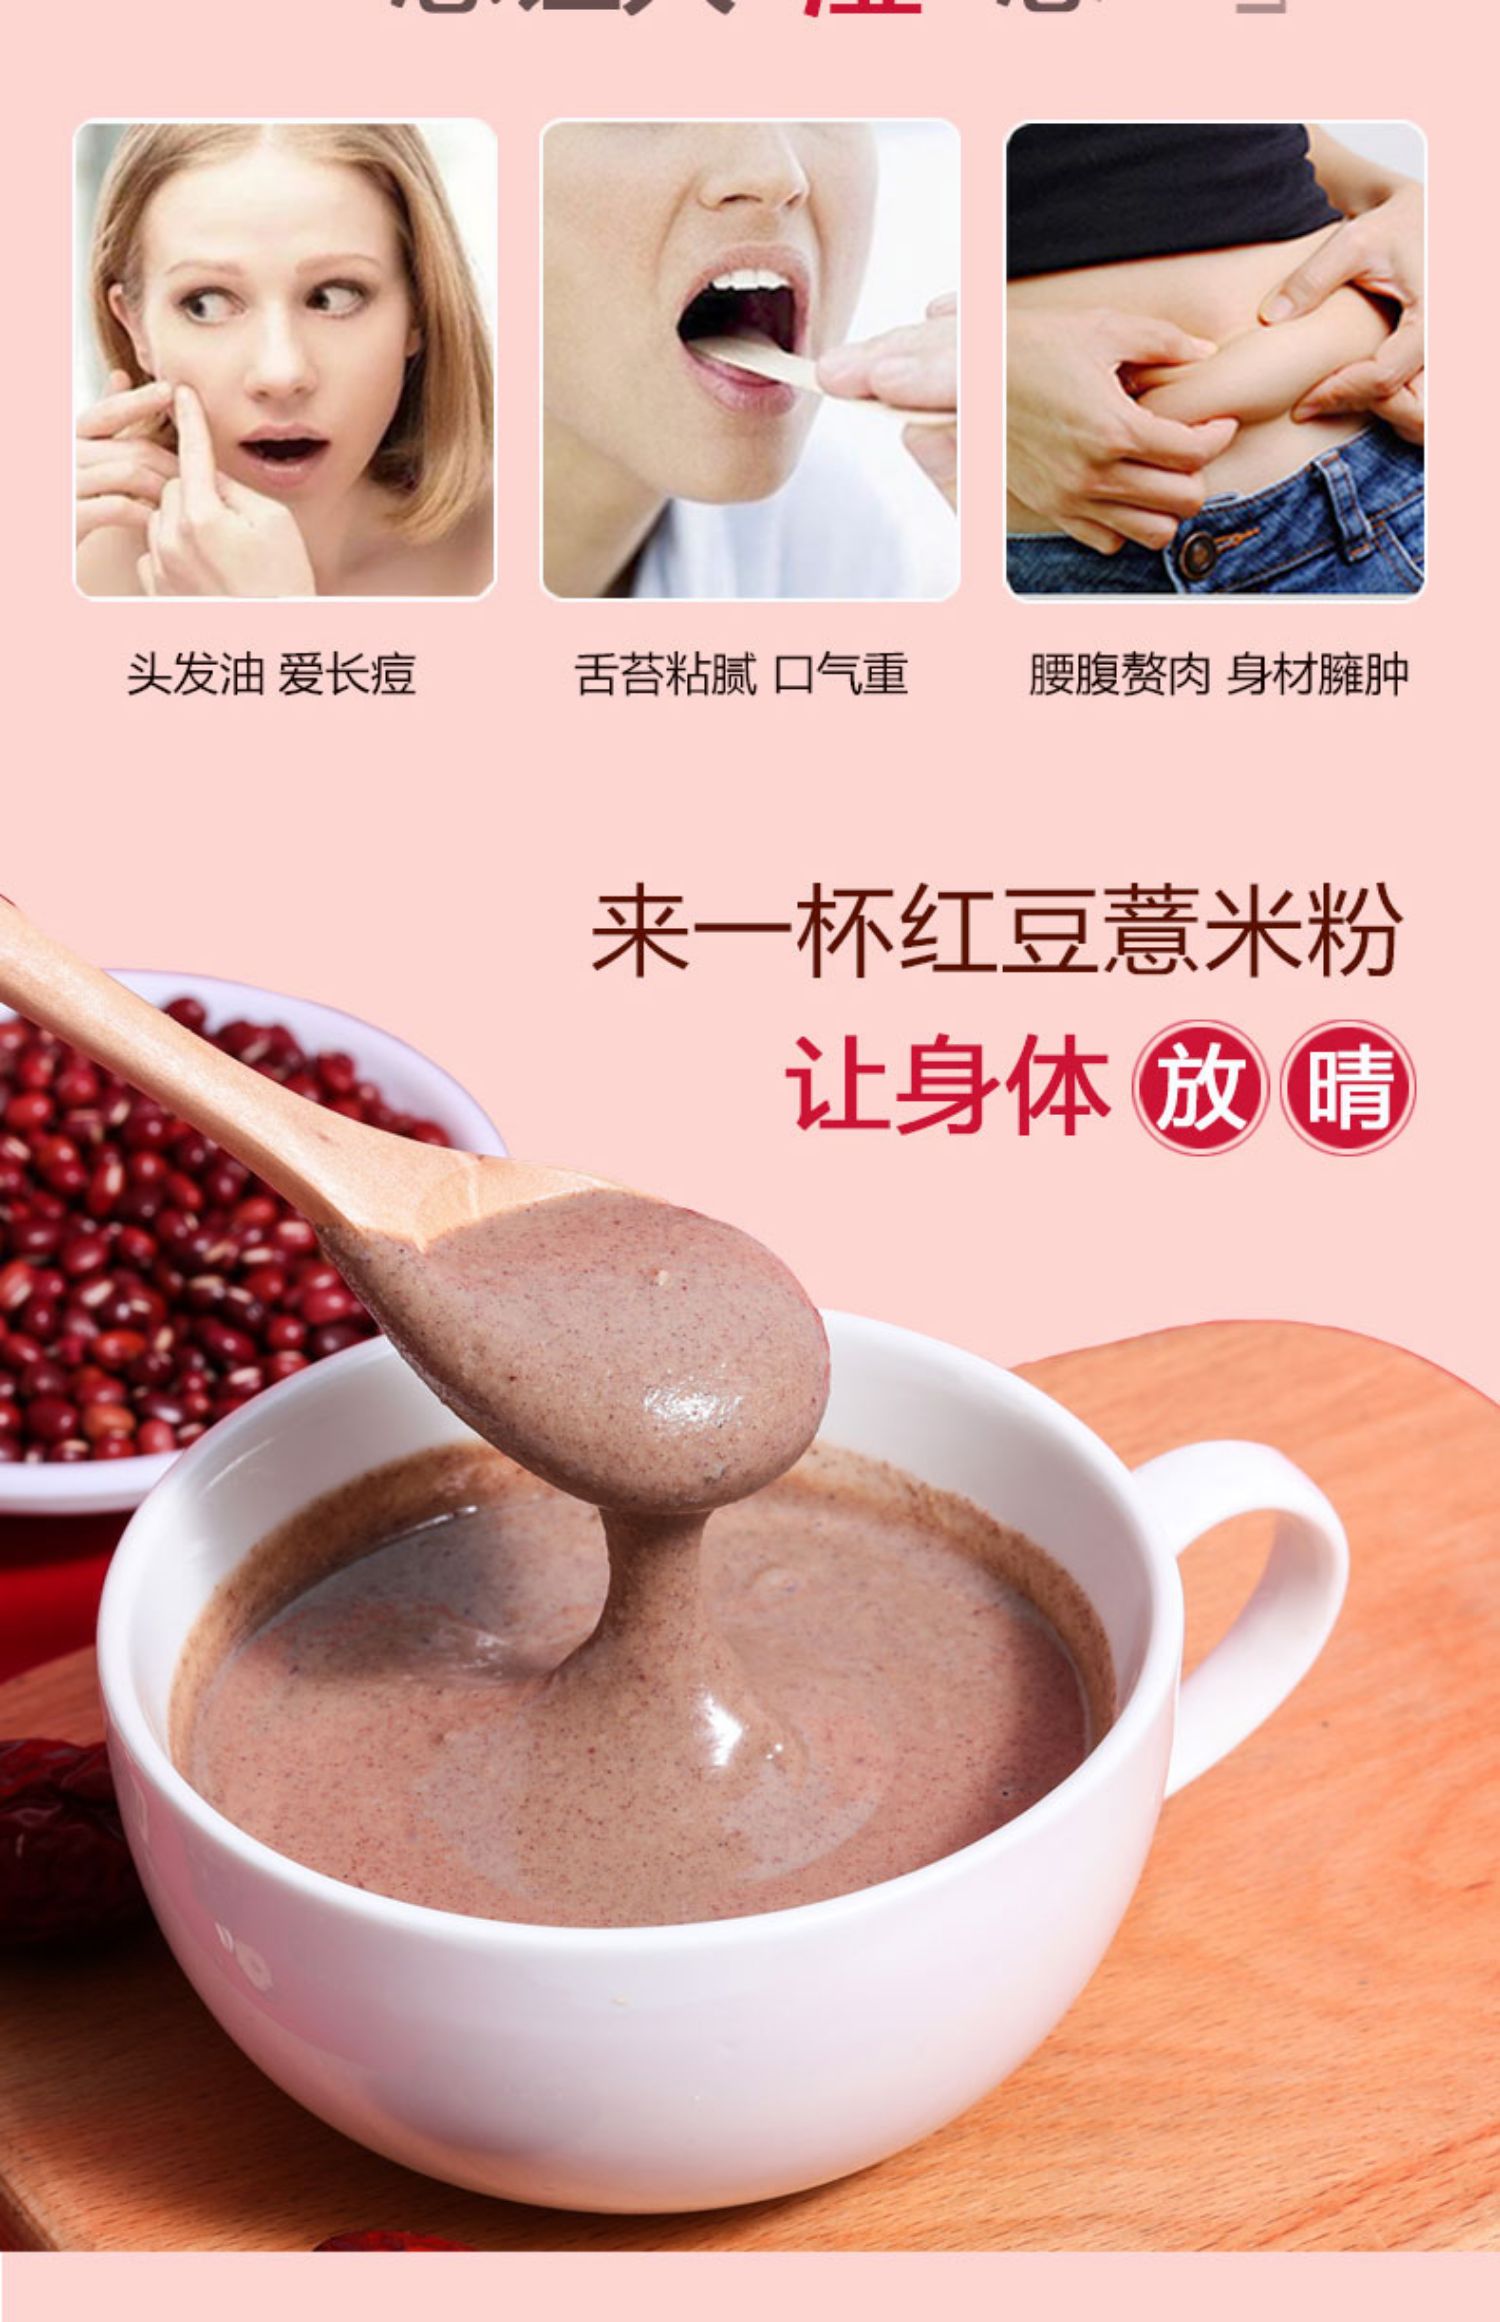 善瑞红豆薏米懒人代餐粉600g